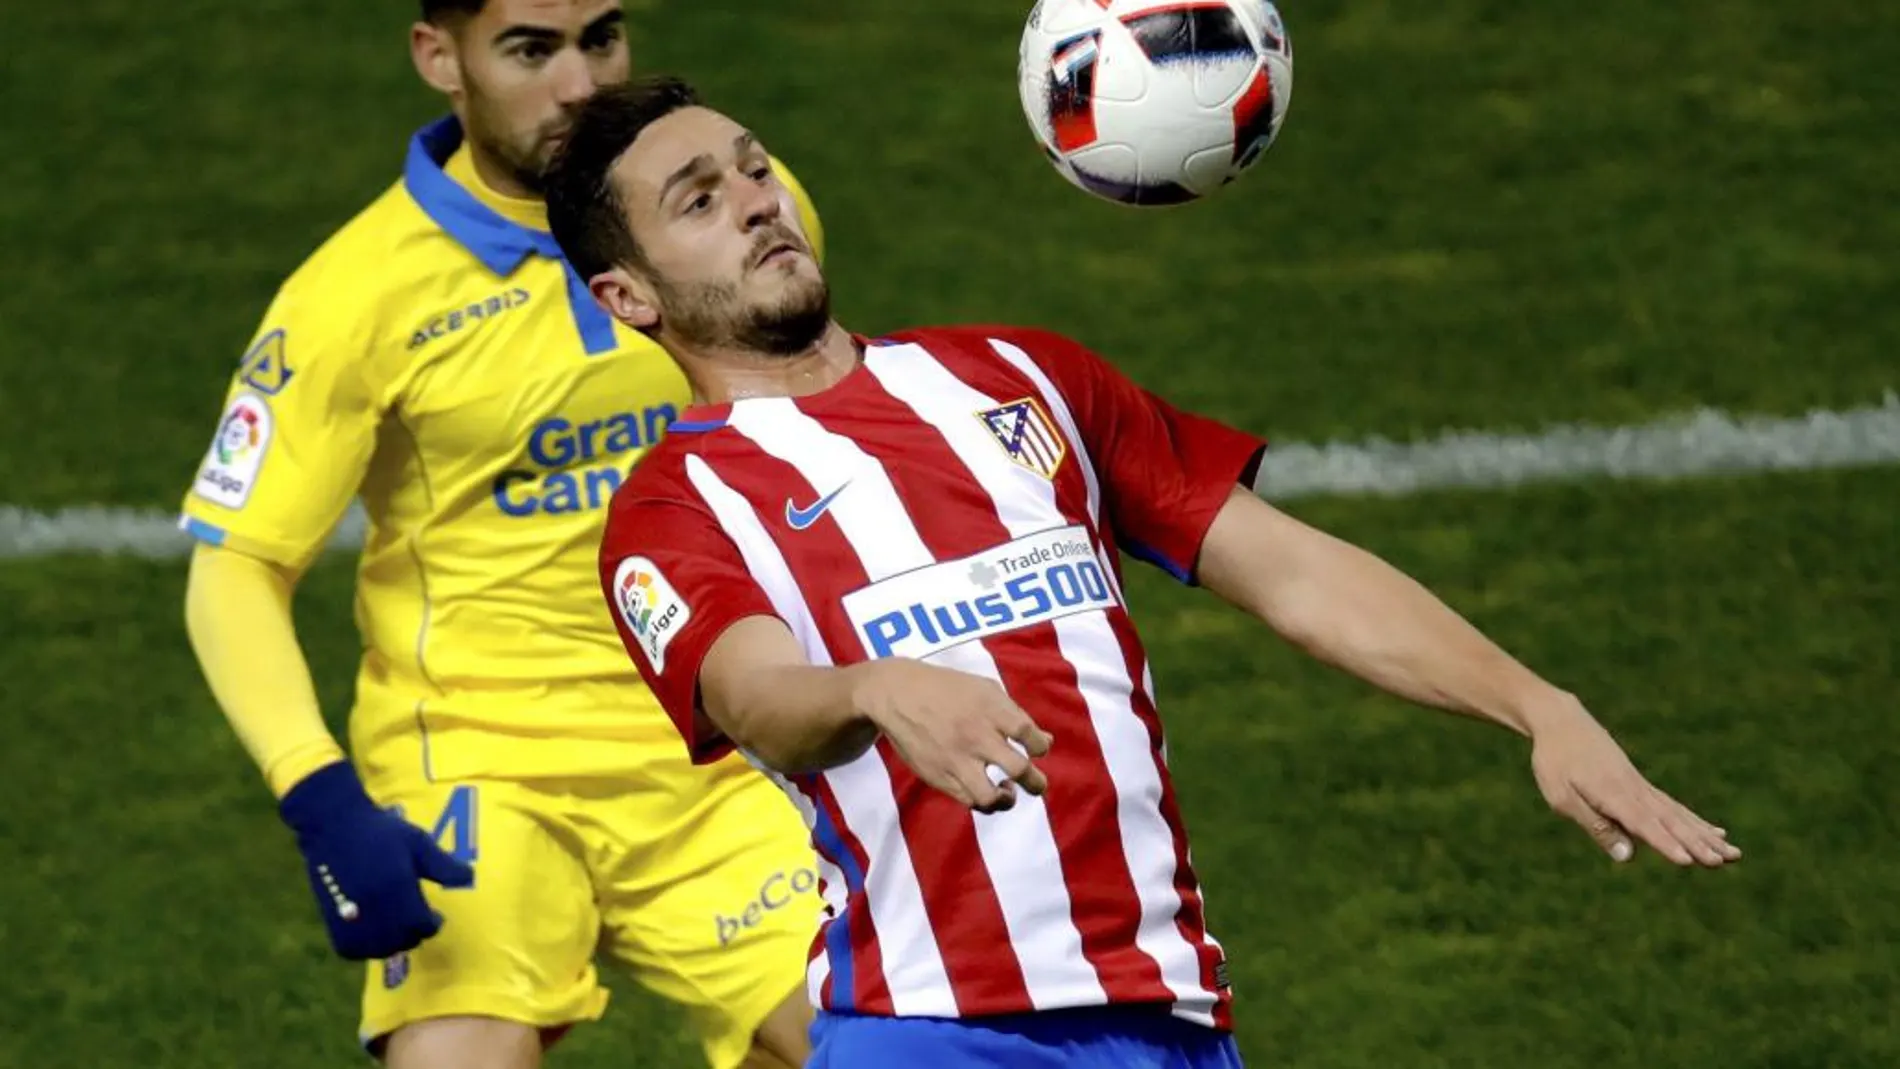 El centrocampista del Atlético de Madrid Koke Resurreción controla el balón junto a Pedro Tanausú "Tana", centrocampista de la UD Las Palmas